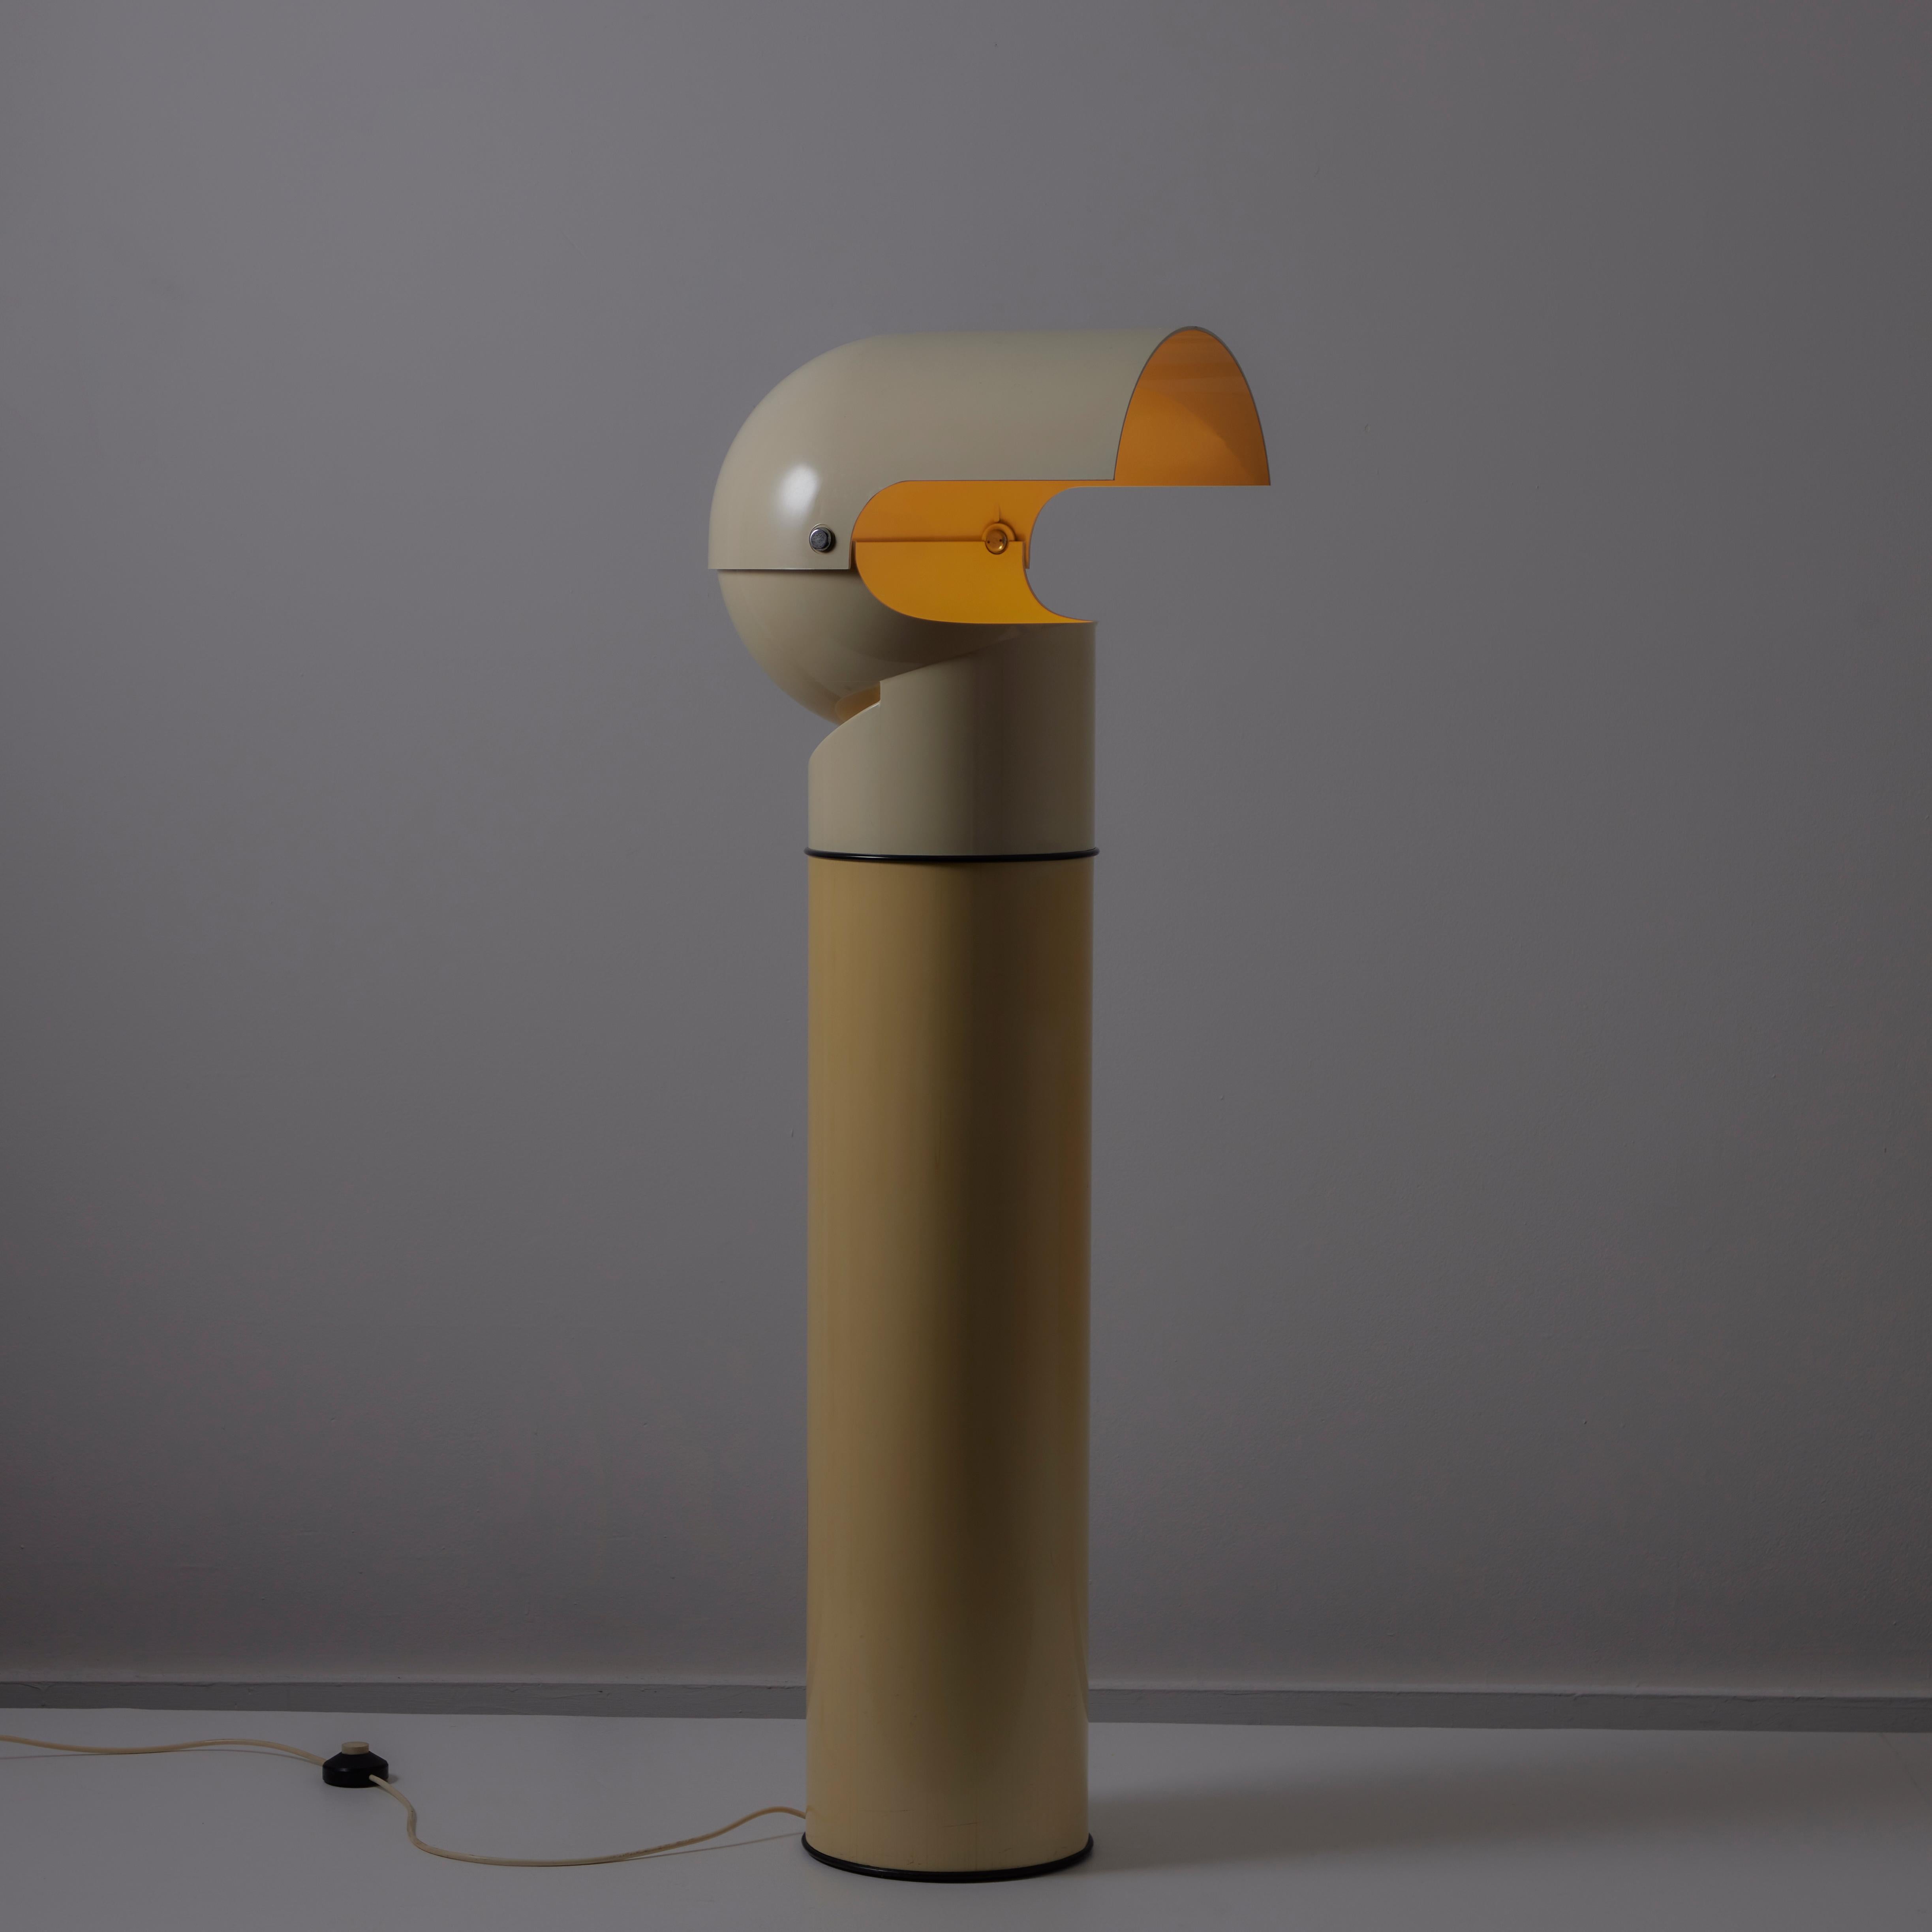 Lampadaire 'Pileo' par Gae Aulenti pour Artemide. Conçue et fabriquée en Italie, en 1972. Lampadaire en plastique bicolore avec abat-jour réglable. La lampe est constituée d'une seule douille de type E27, adaptée pour les États-Unis. Nous